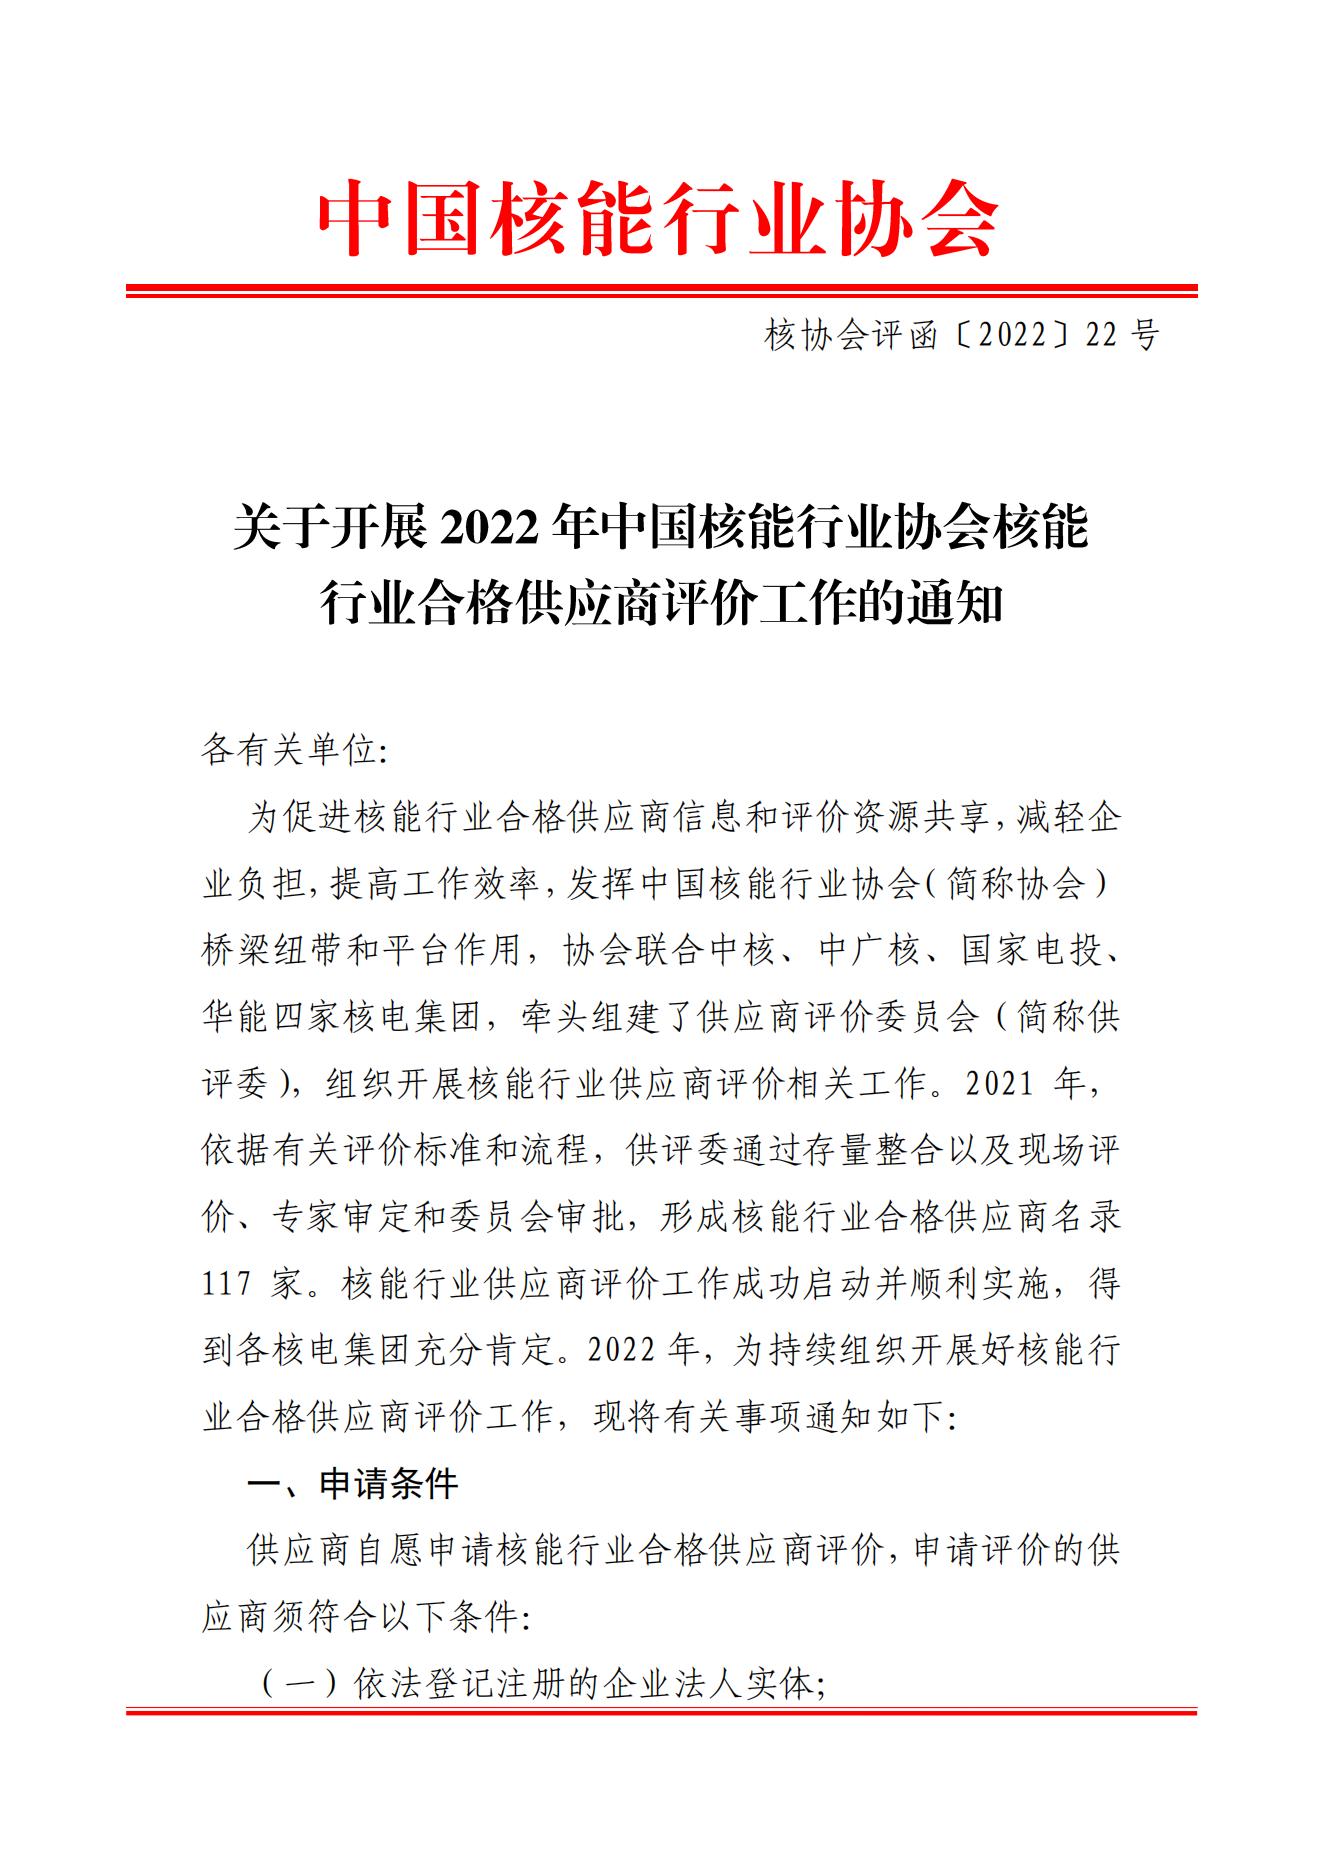 关于开展2022年中国核能行业协会核能行业合格供应商评价工作的通知_00.jpg